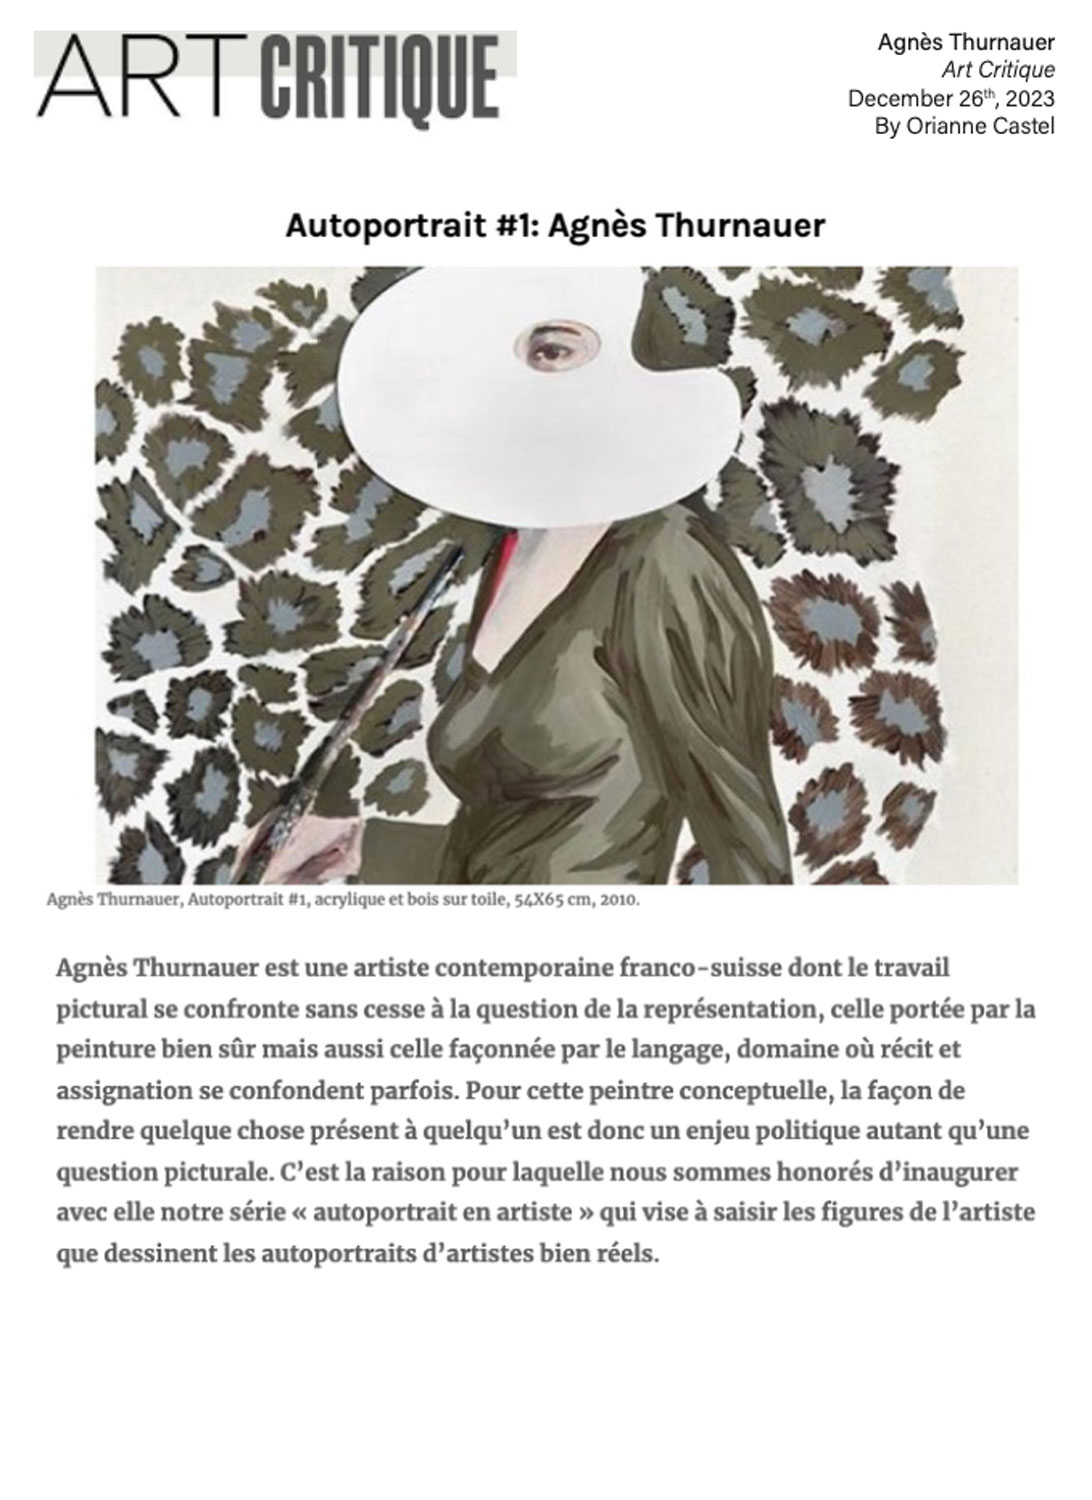 Autoportrait #1: Agnés Thurnauer - Art Critique